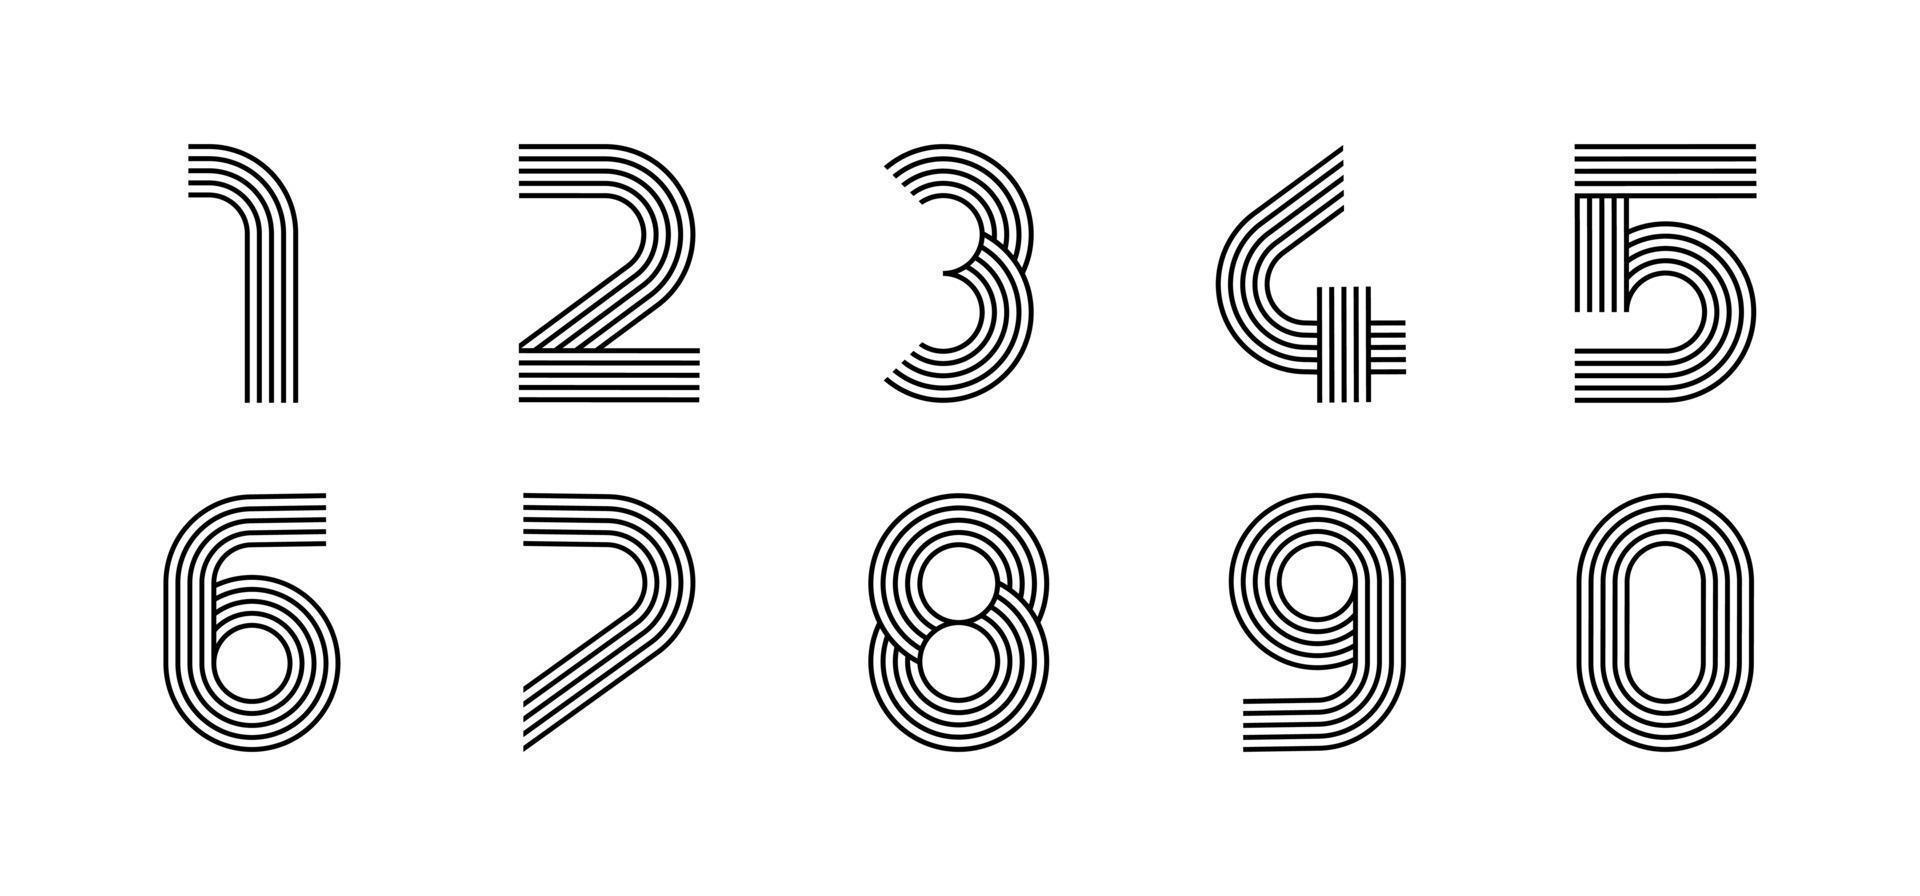 siffror linjär modern logotyp. alla siffror i linjeremsform. alfabetet nummer tecken och nummer linjär abstrakt design. logotyp, företagsidentitet, app, kreativ affisch med mera. vektor